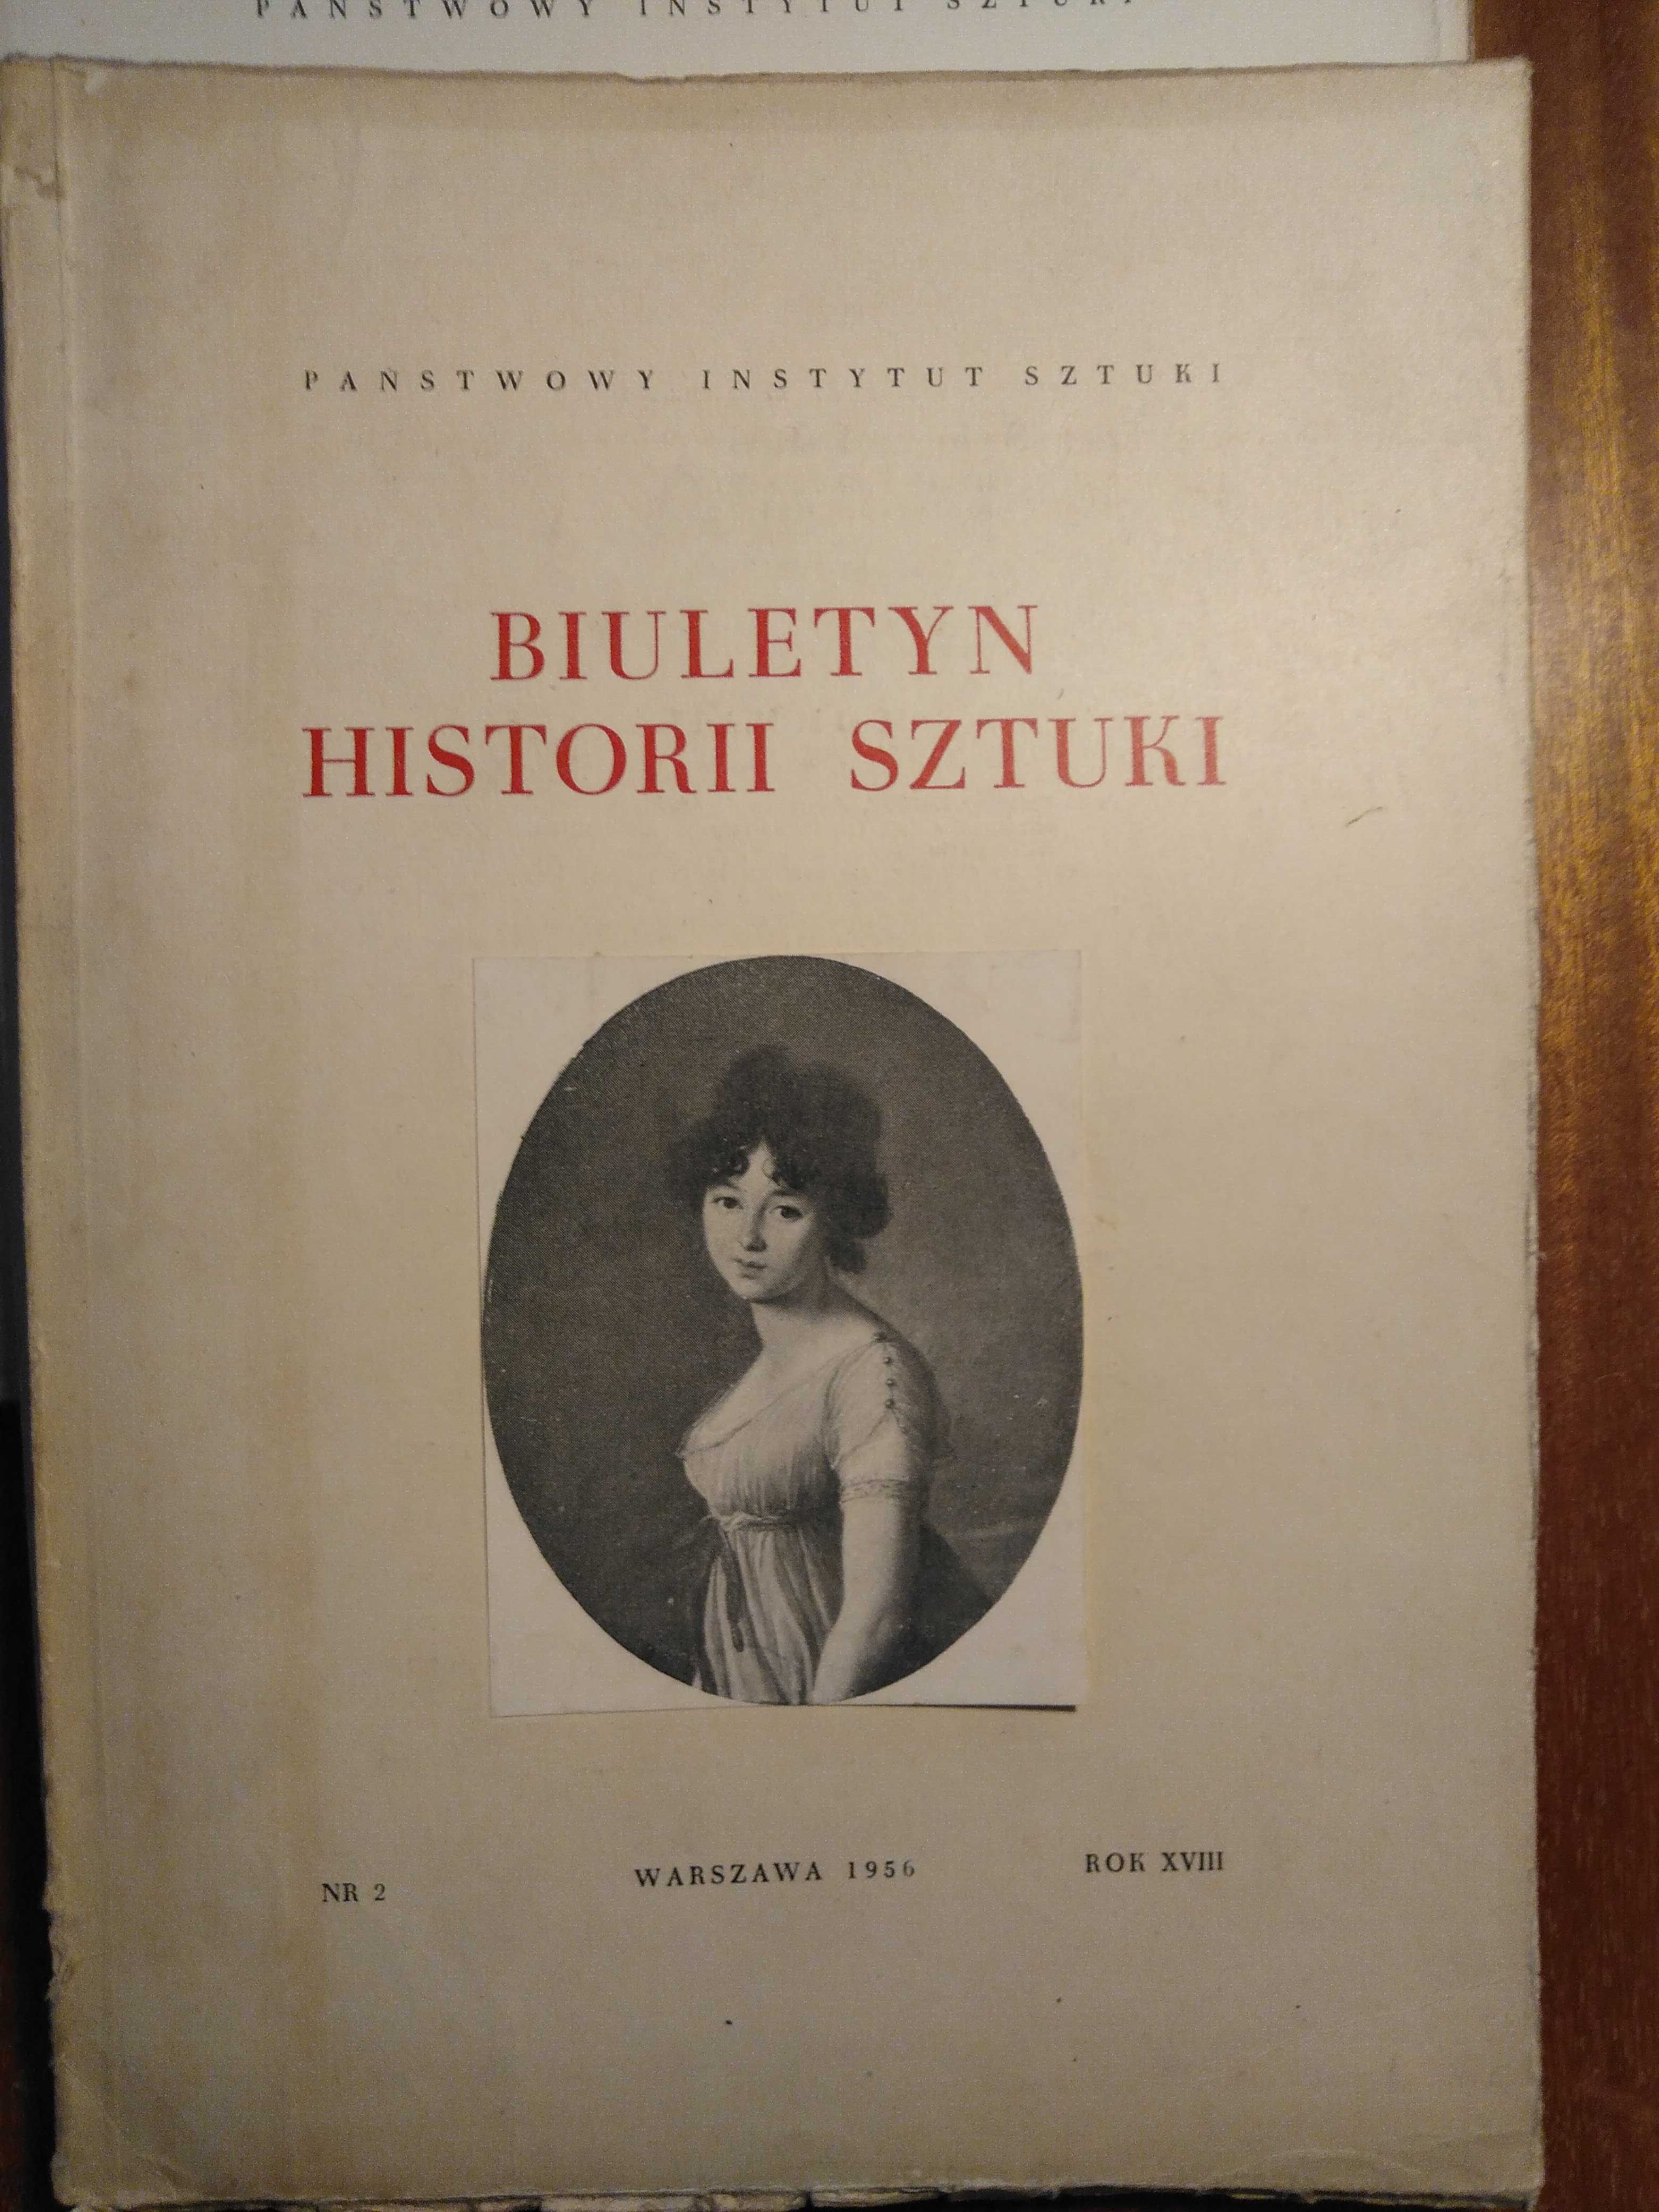 Biuletyn Historii Sztuki - 1955/56 - 5 zeszytów